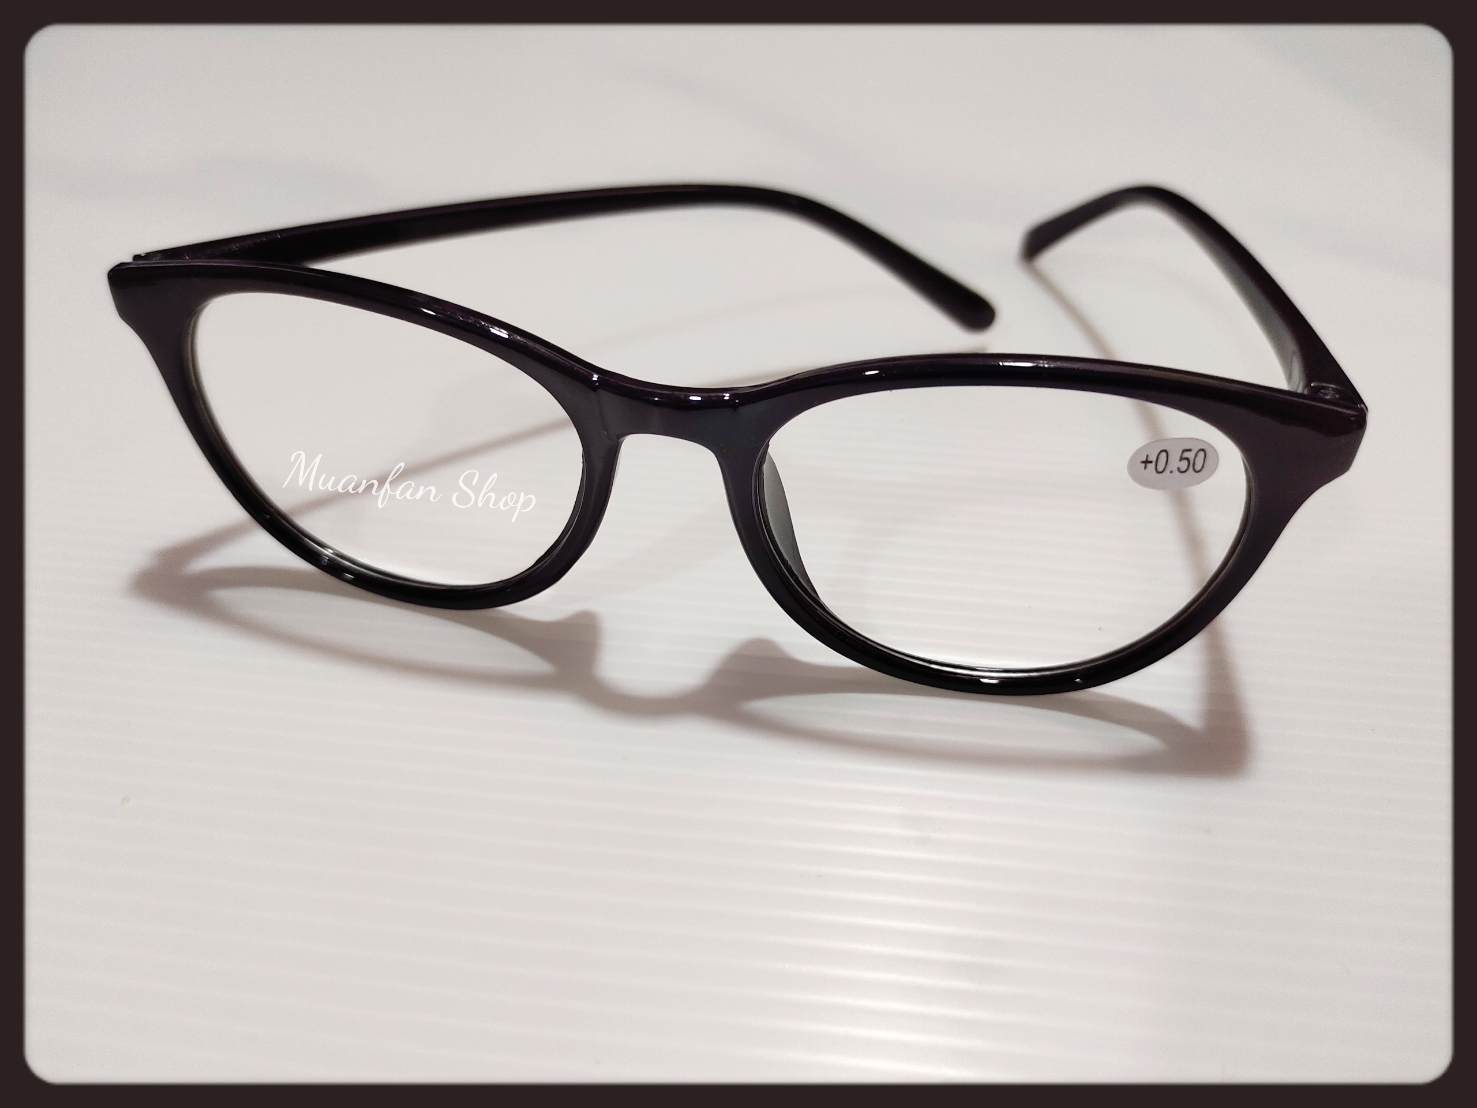 ข้อมูลเพิ่มเติมของ พร้อมส่ง❗❗ แว่นตาสายตายาว สุดคลาสสิค กรอบสีดำล้วน ทรงยอดฮิต ค่าสายตายาวเริ่มต้น +0.50 - +4.00 แถมฟรีผ้าเช็ดแว่นตาพร้อมซองใส่แว่นตากันรอย